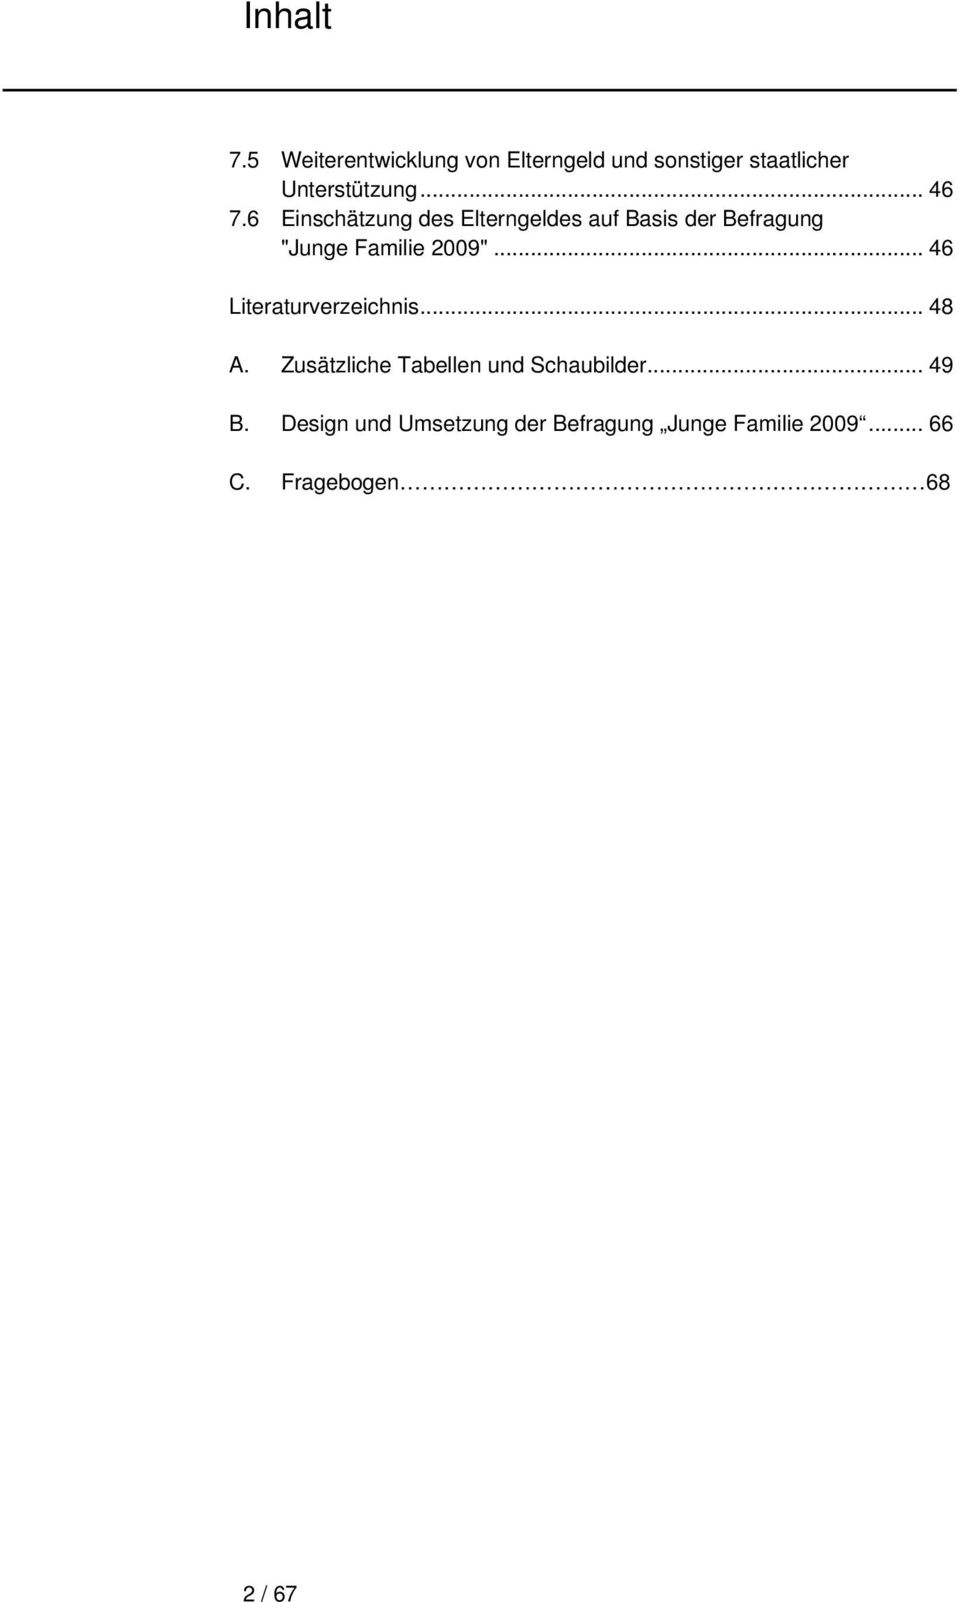 6 Einschätzung des Elterngeldes auf Basis der Befragung "Junge Familie 2009".